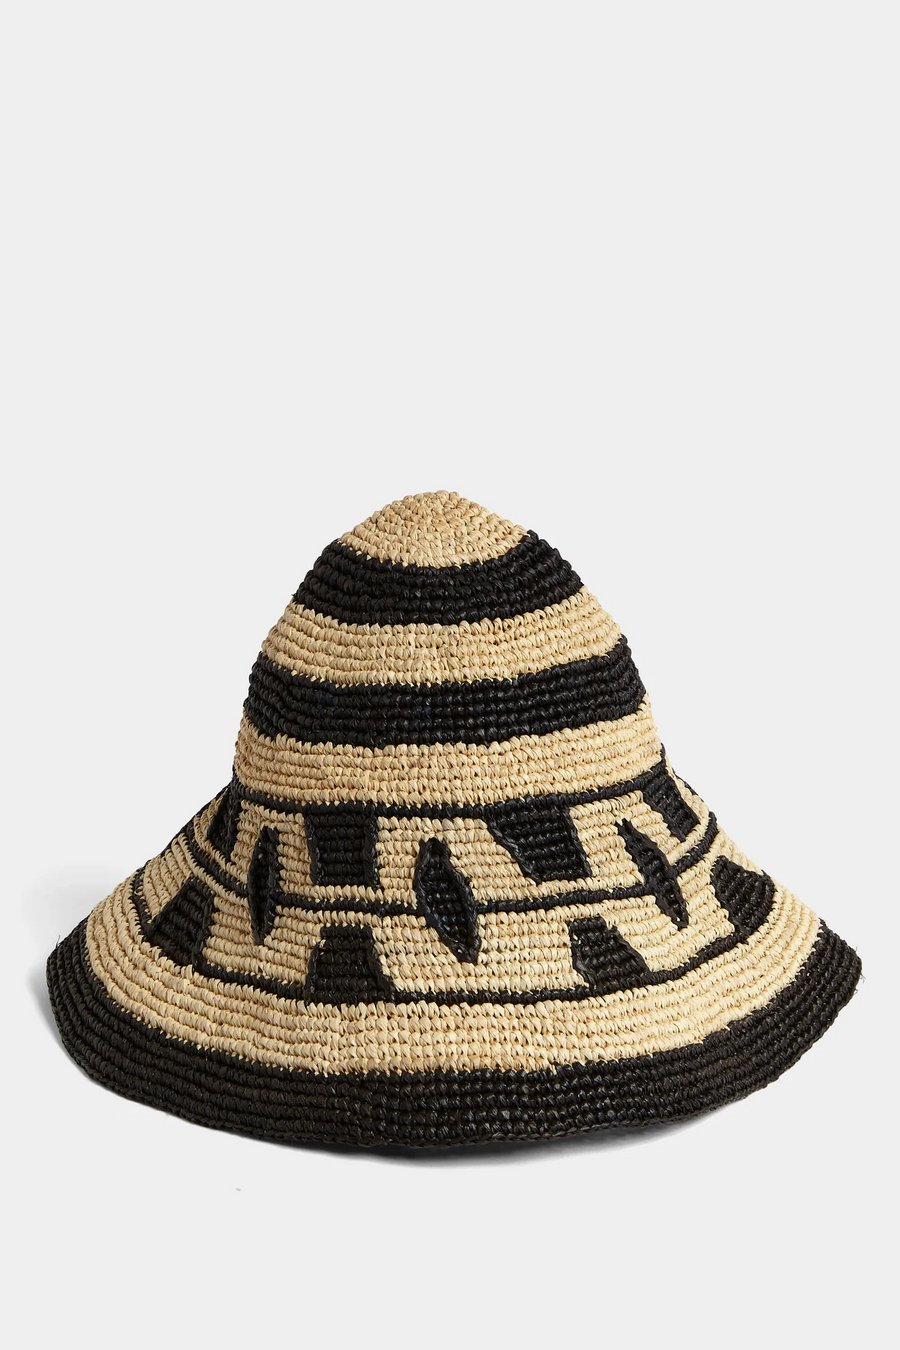 Sisterhood Knitted Hat in Black & Cream